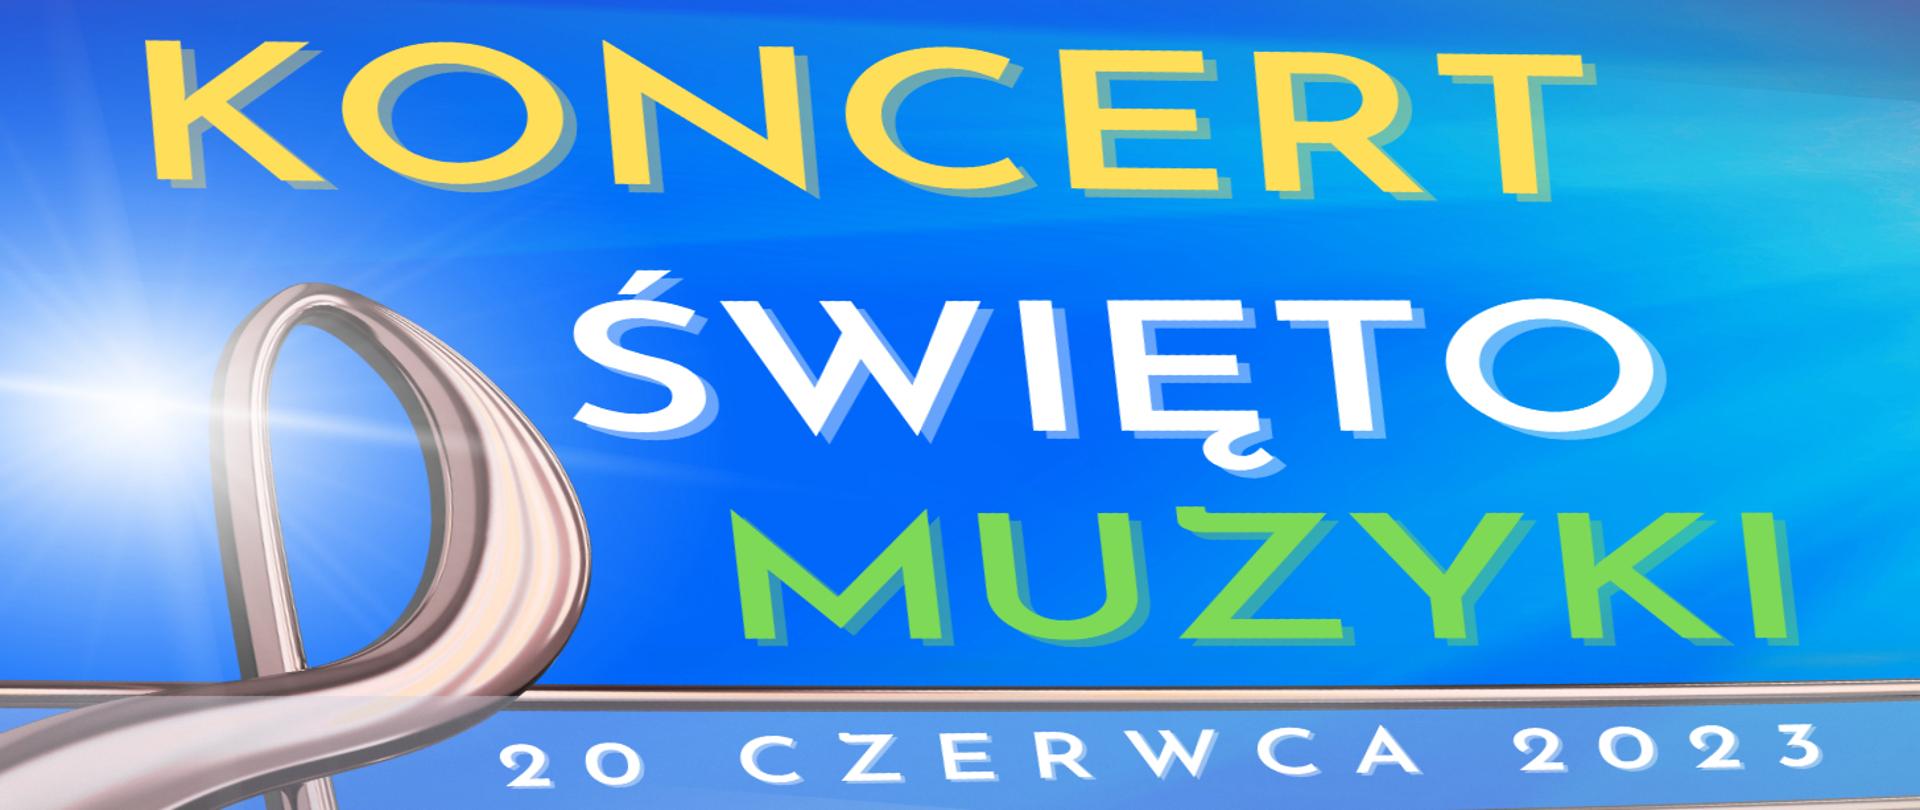 Grafika przedstawia fragment plakatu koncertowego z okazji święta muzyki. Na jasnoniebieskim tle kolorowe